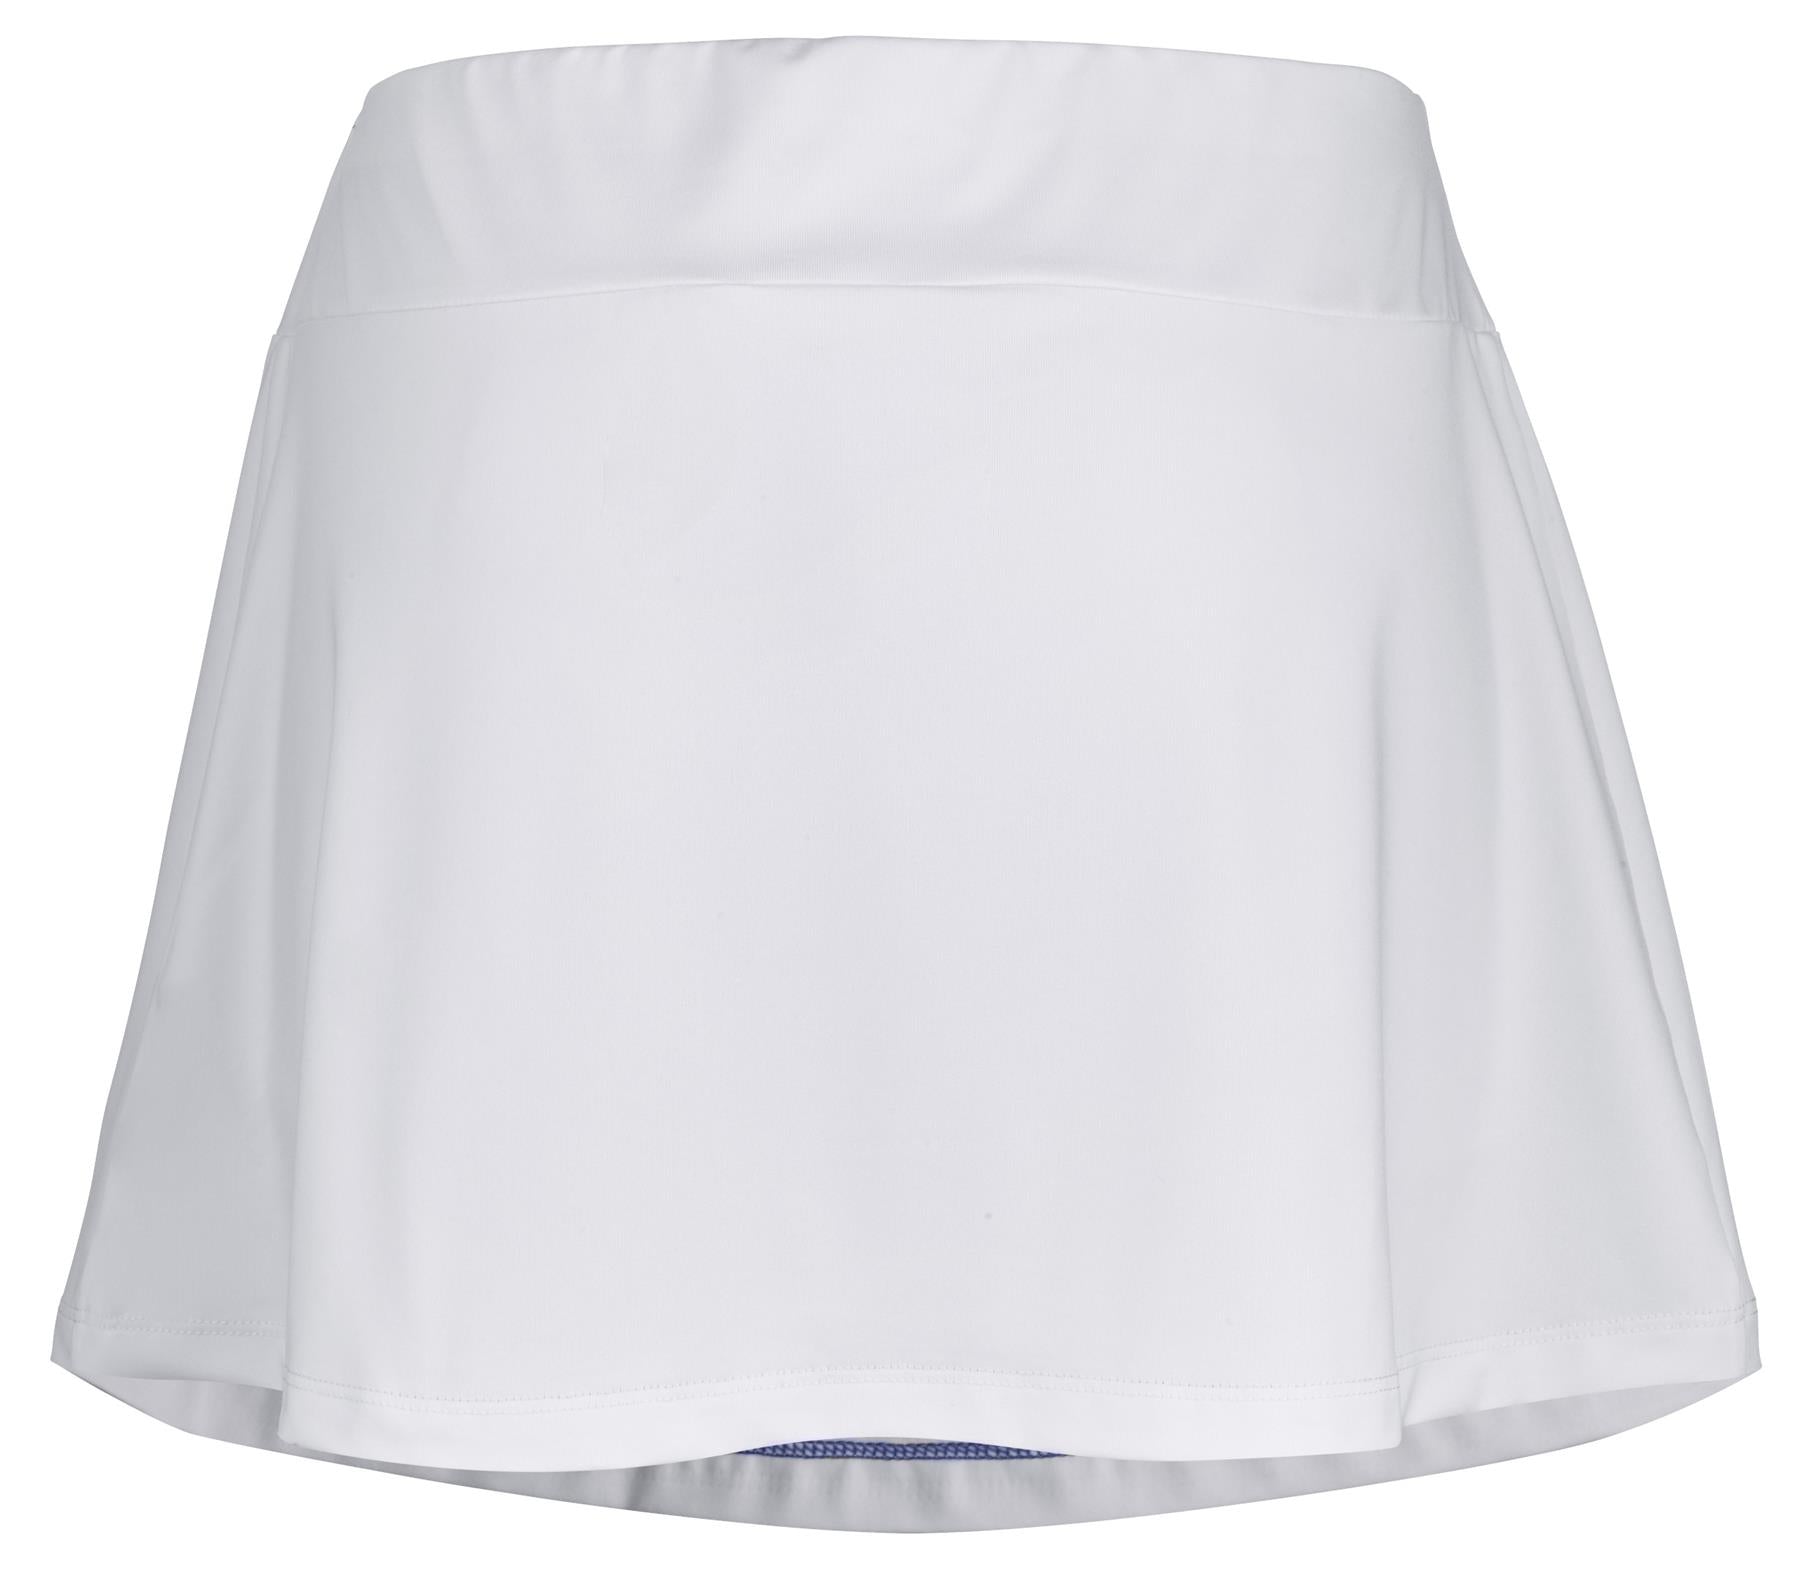 Babolat Play Womens Tennis Skirt - White - Back